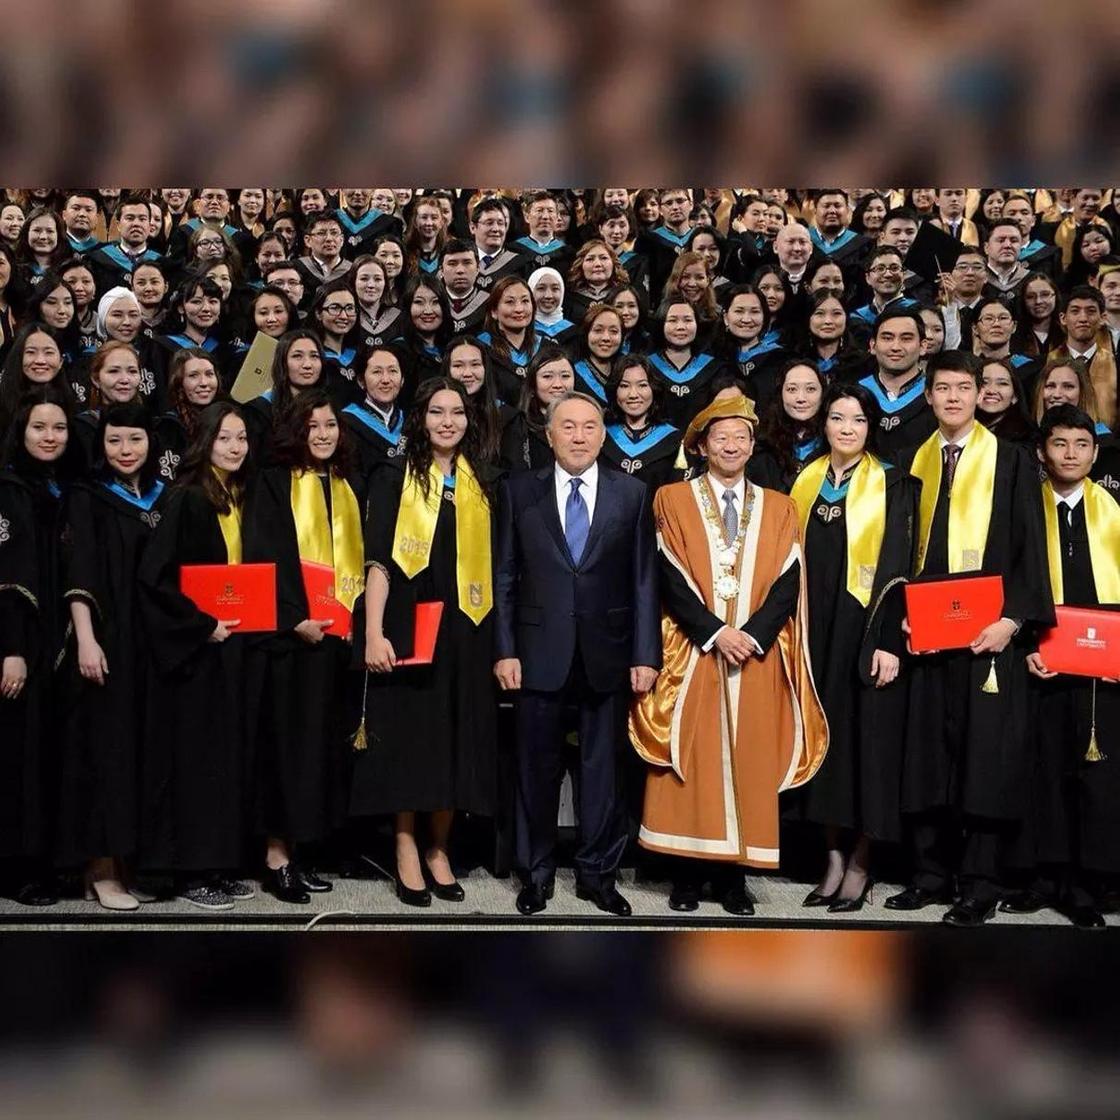 Выпускница рассказала, как Назарбаев вручал ей диплом «не по протоколу»